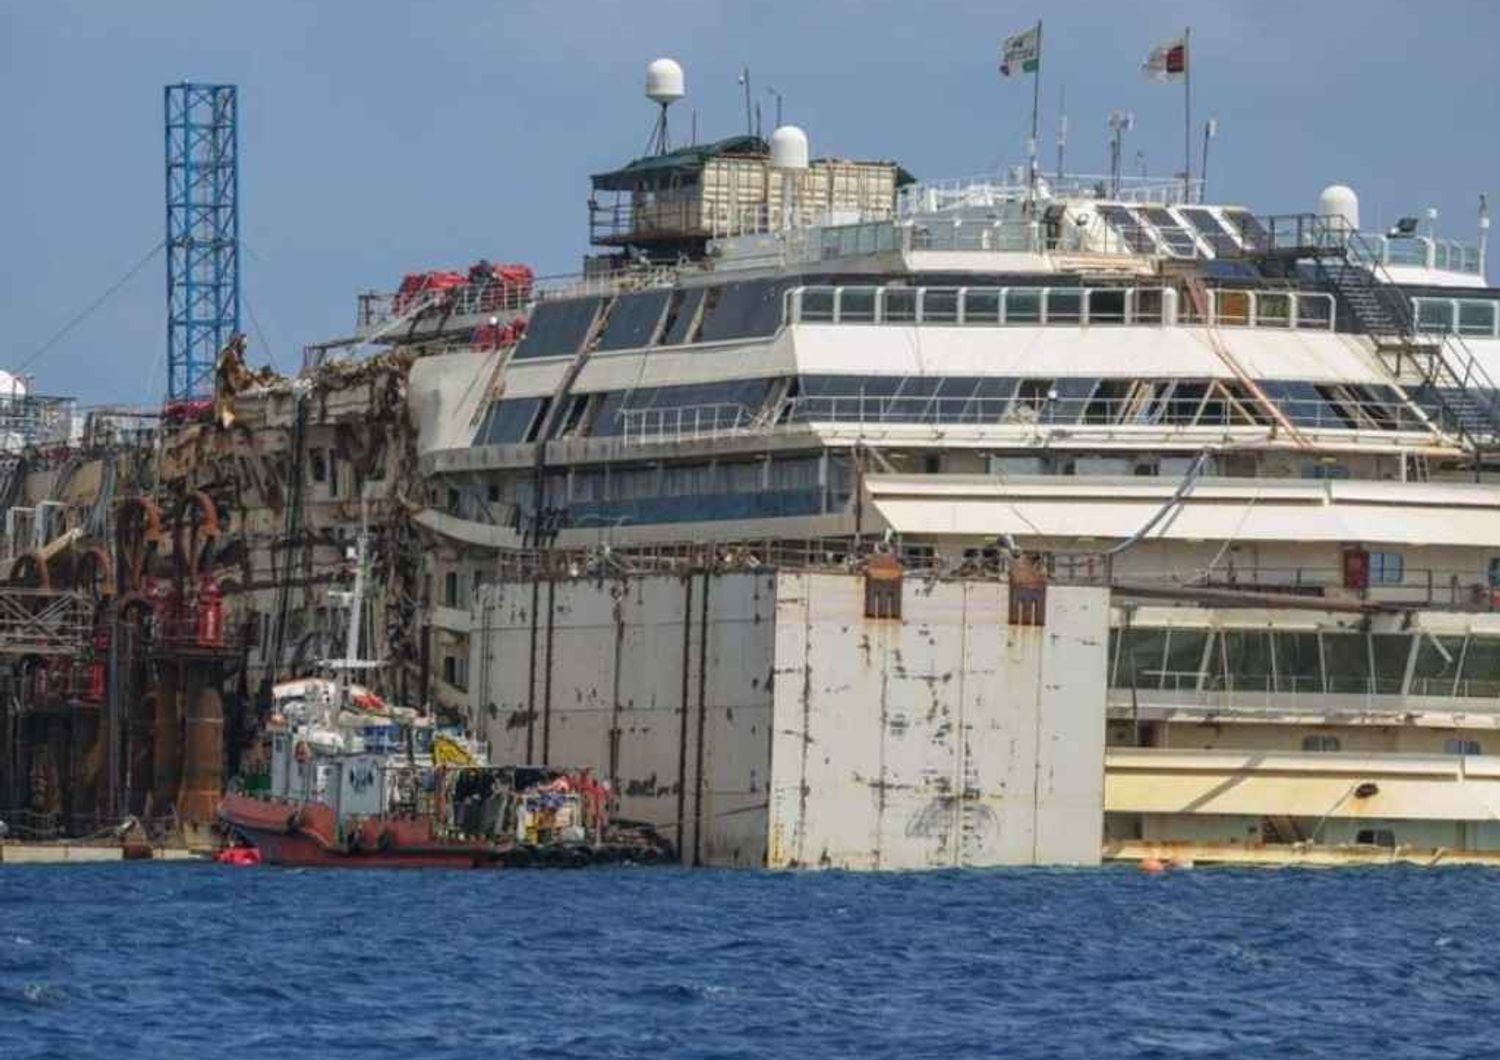 Shipwrecked Costa Concordia floats again